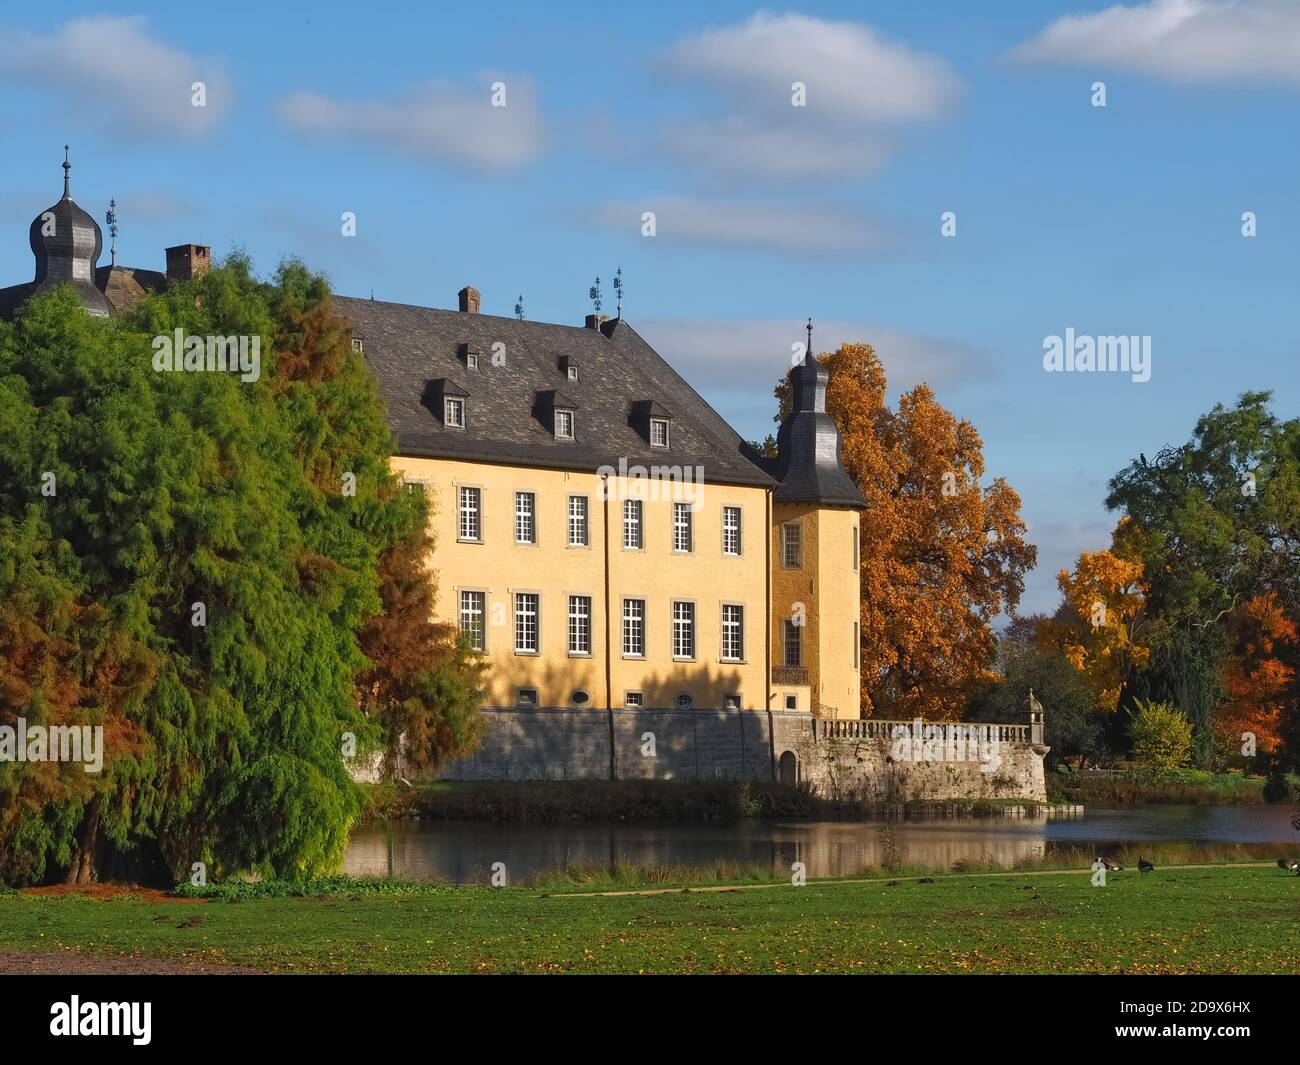 Barocke Wasserburg Schloss Dyck in Deutschland Stockfoto